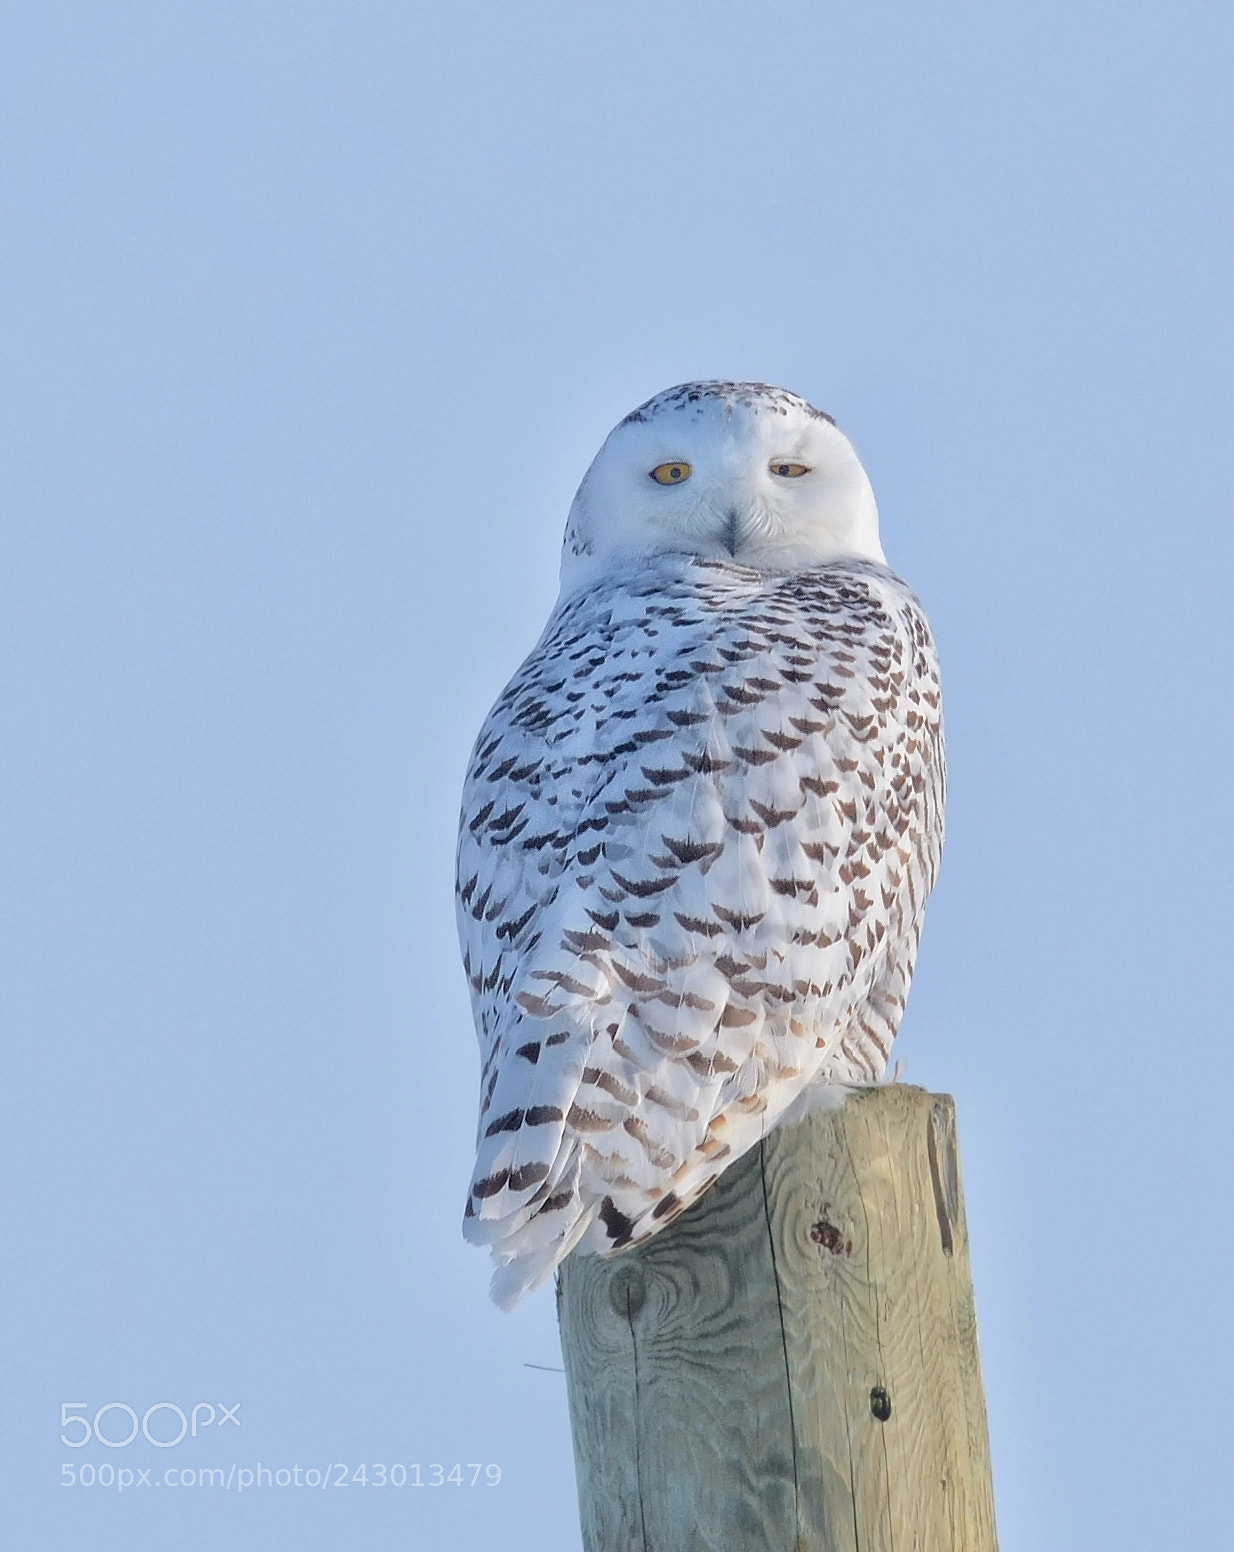 Nikon D7100 sample photo. Snowy owl photography